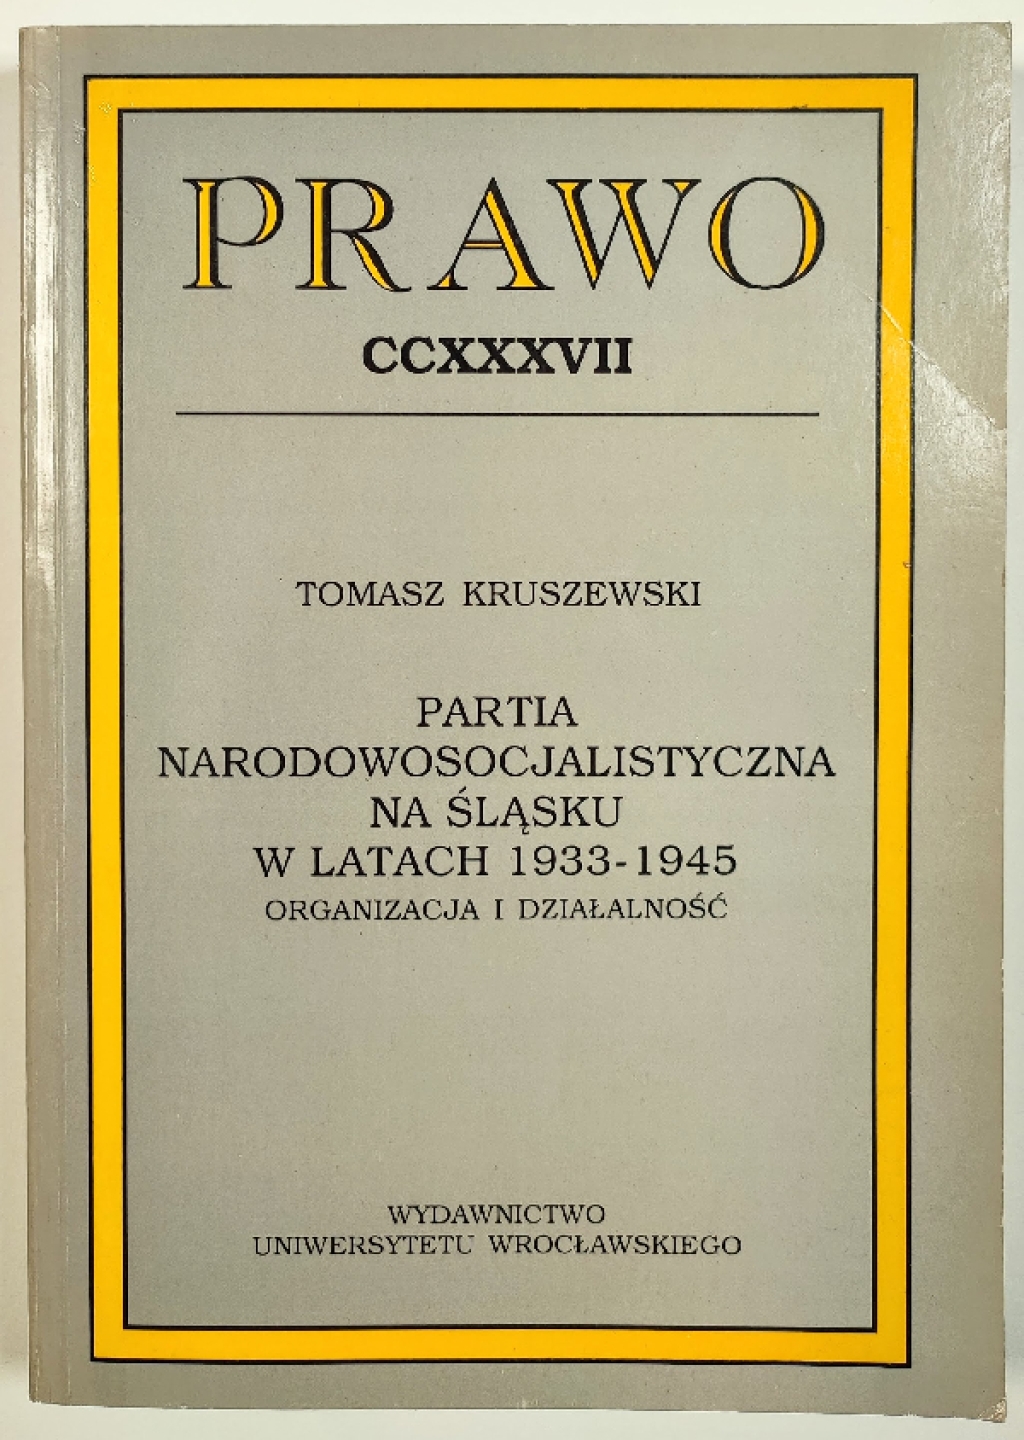 Partia Narodowosocjalistyczna na Śląsku w latach 1933-1945. Organizacja i działalność